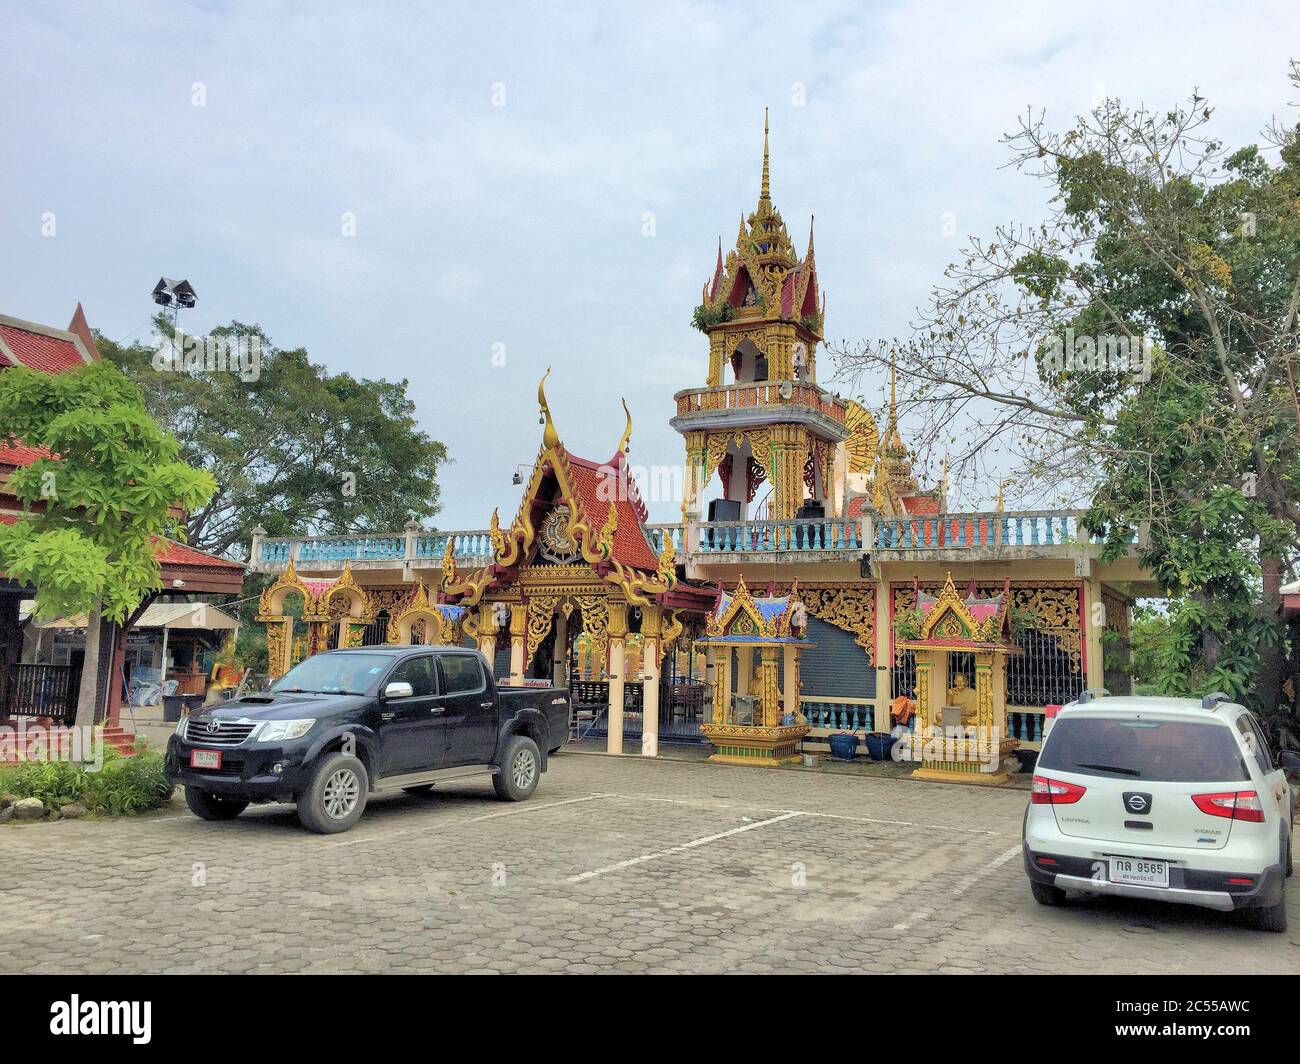 Bouddha temple à Koh Samui Thaïlande Banque D'Images